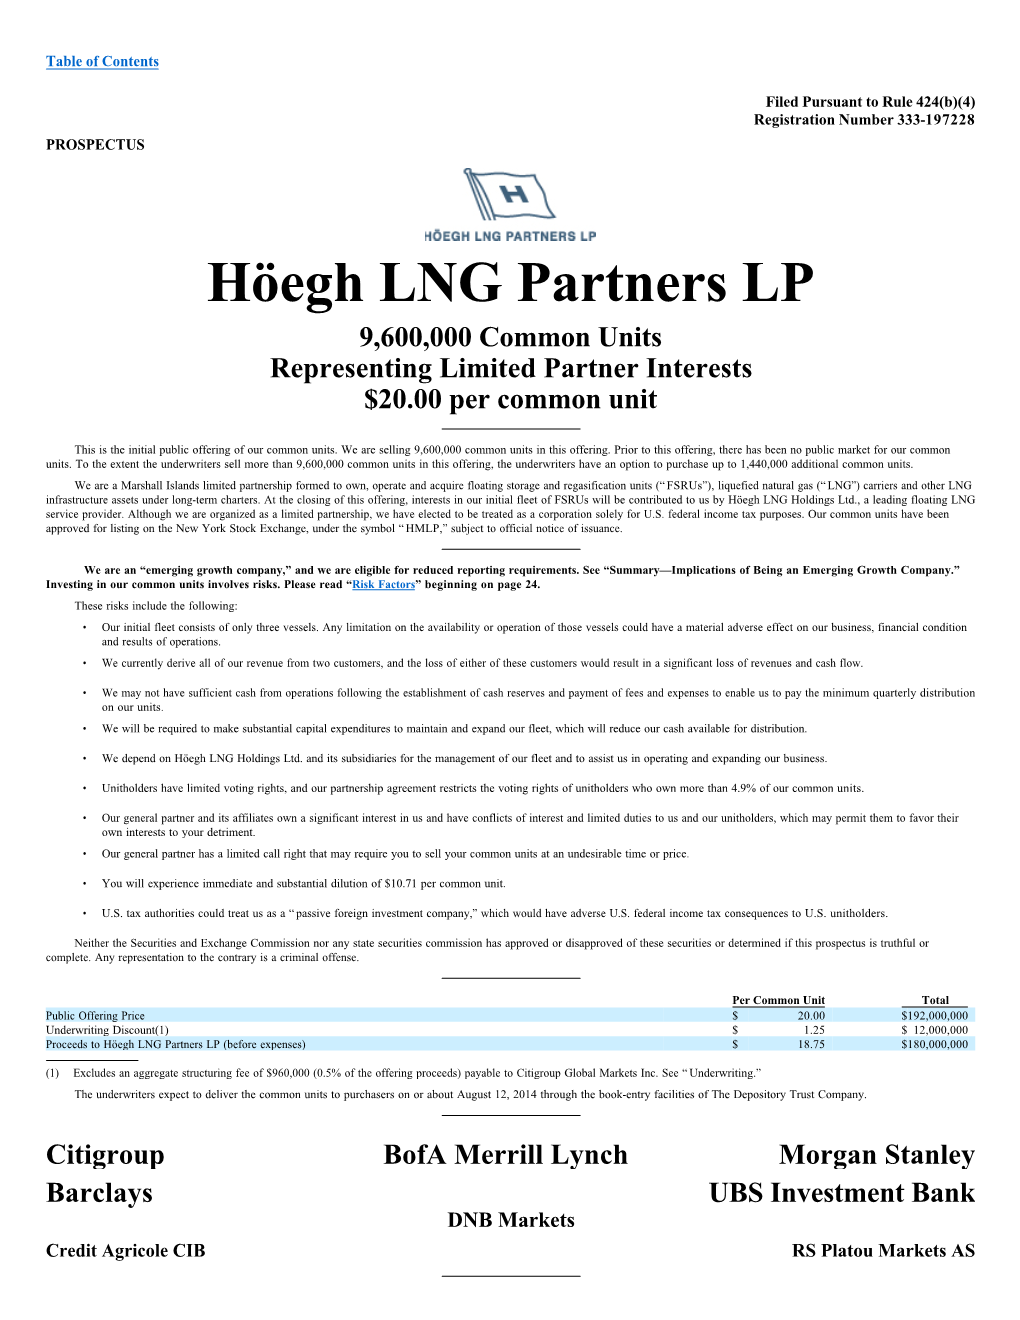 Höegh LNG Partners LP